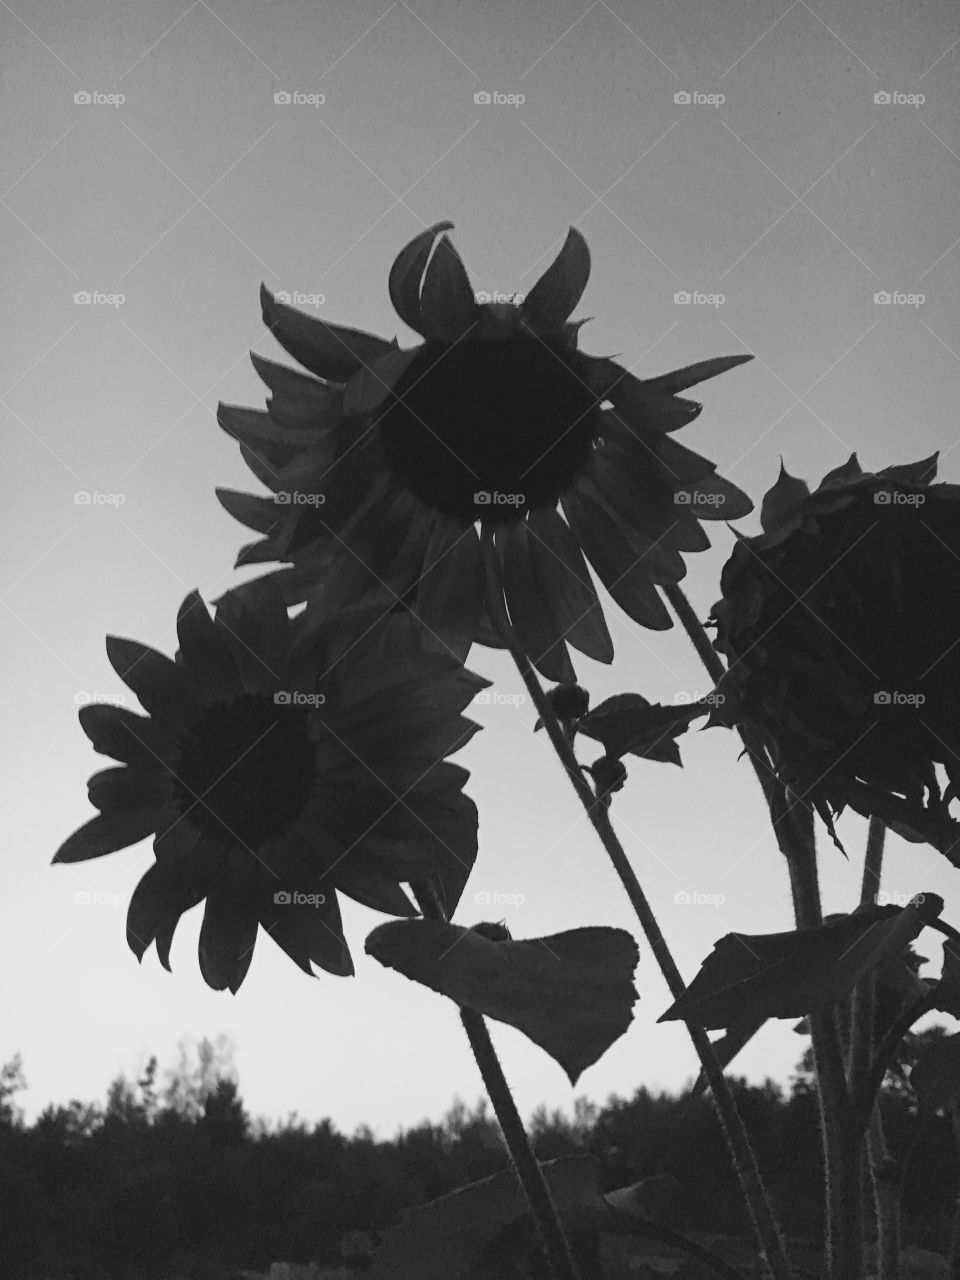 Sunflower at dusk